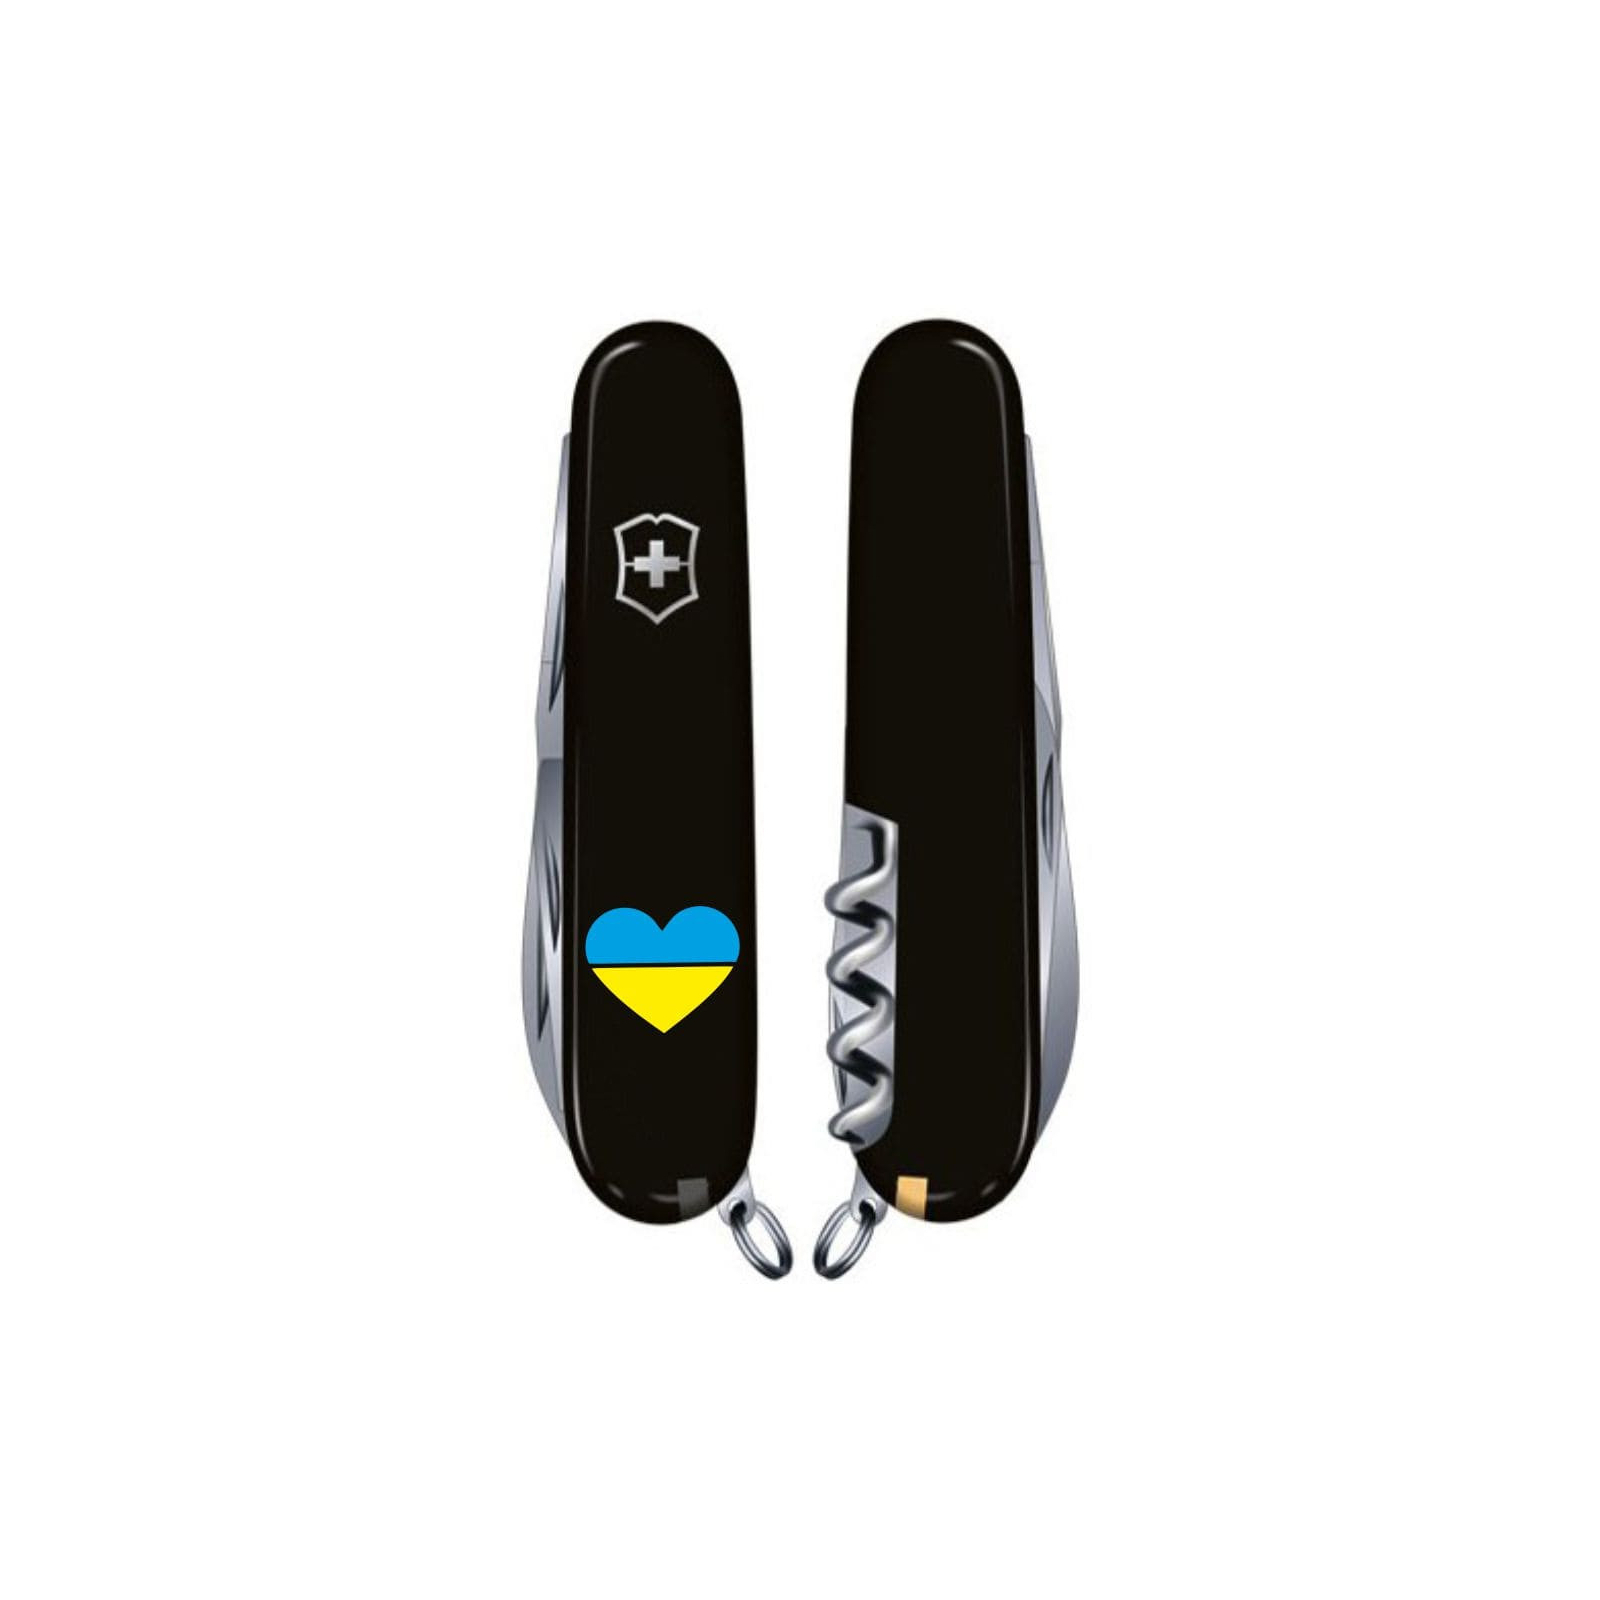 Нож Victorinox Climber Ukraine Black "Серце жовто-блакитне" (1.3703.3_T1090u) изображение 2